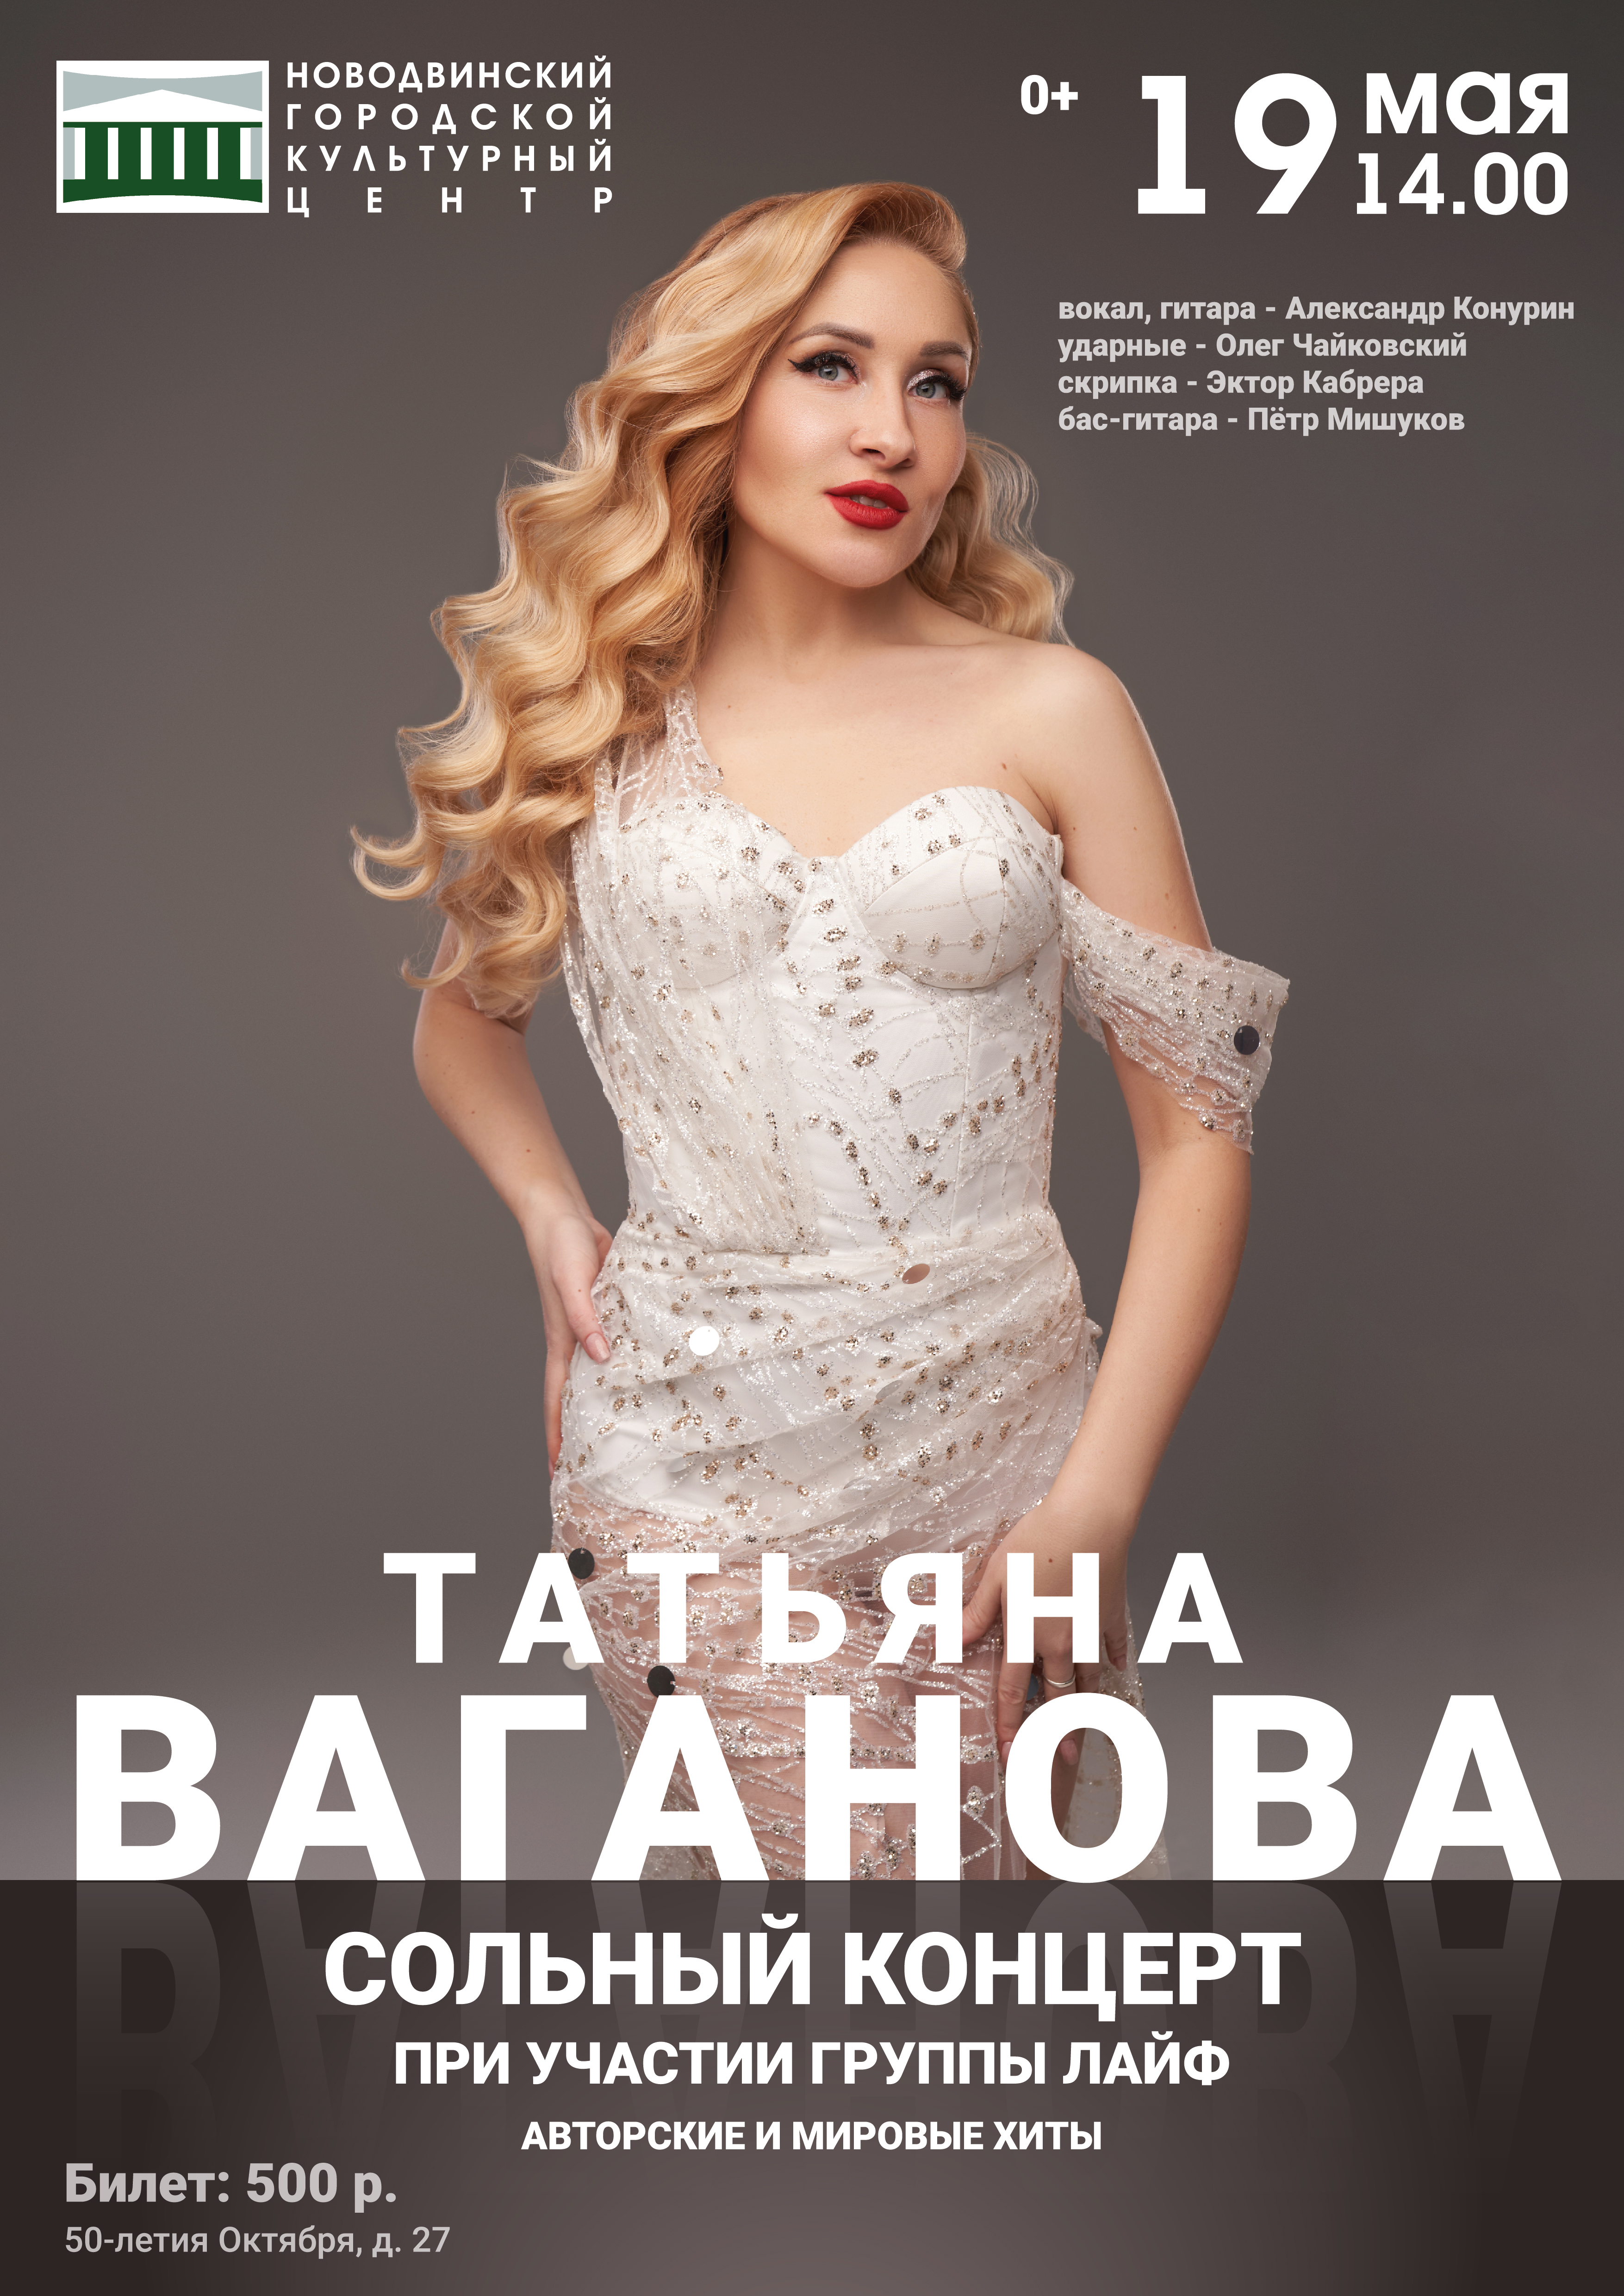 Сольный концерт обаятельной Татьяны Вагановой в Новодвинском городском культурном центре!